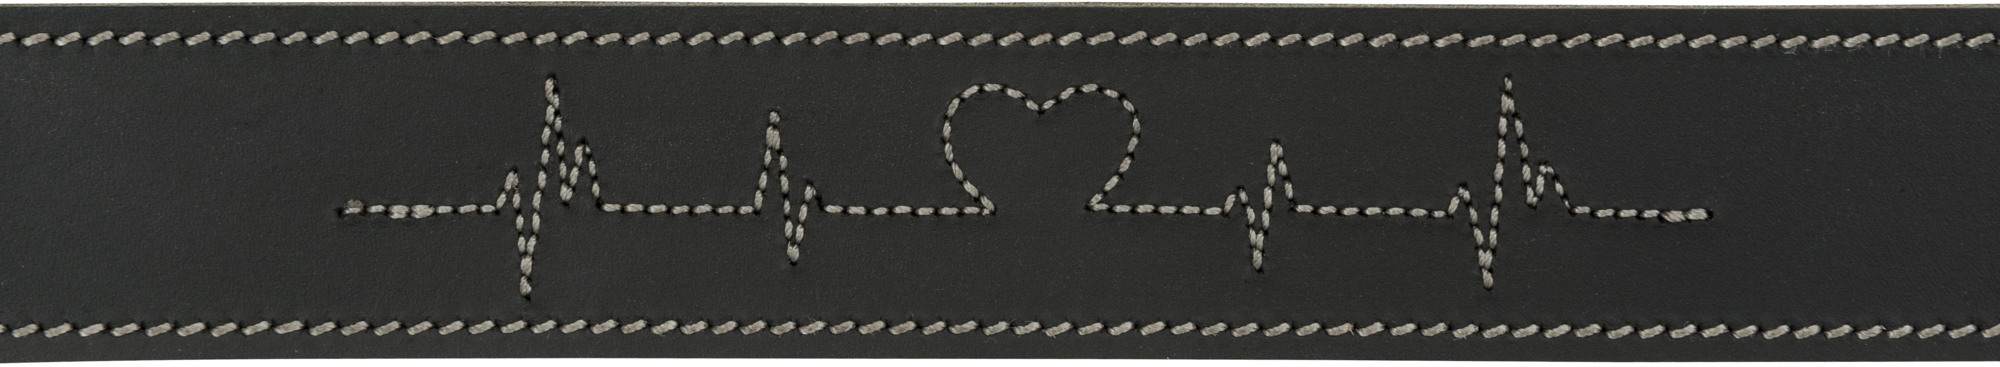 Halsband aus gewachstem und gealtertem Leder Rustic Heartbea - 3 Größen verfügbar